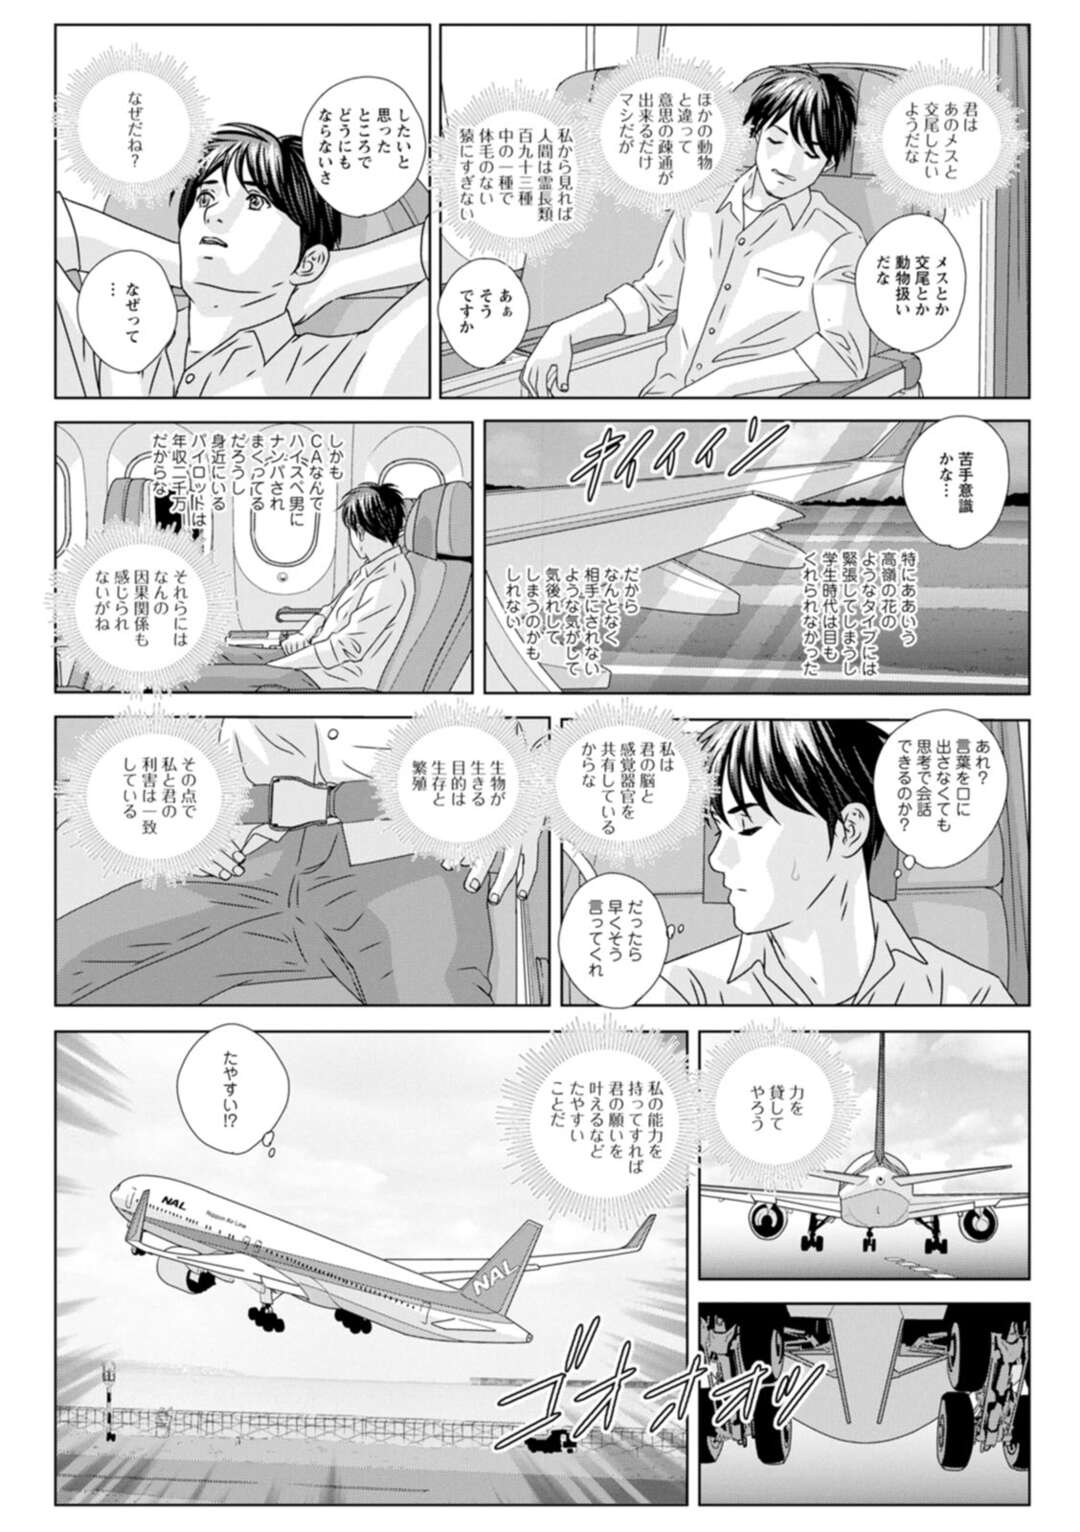 【エロ漫画】搭乗中のの男性乗客を誘惑する巨乳CA…他客の就寝中にフェラをして立ちバックをする！【にしまきとおる】